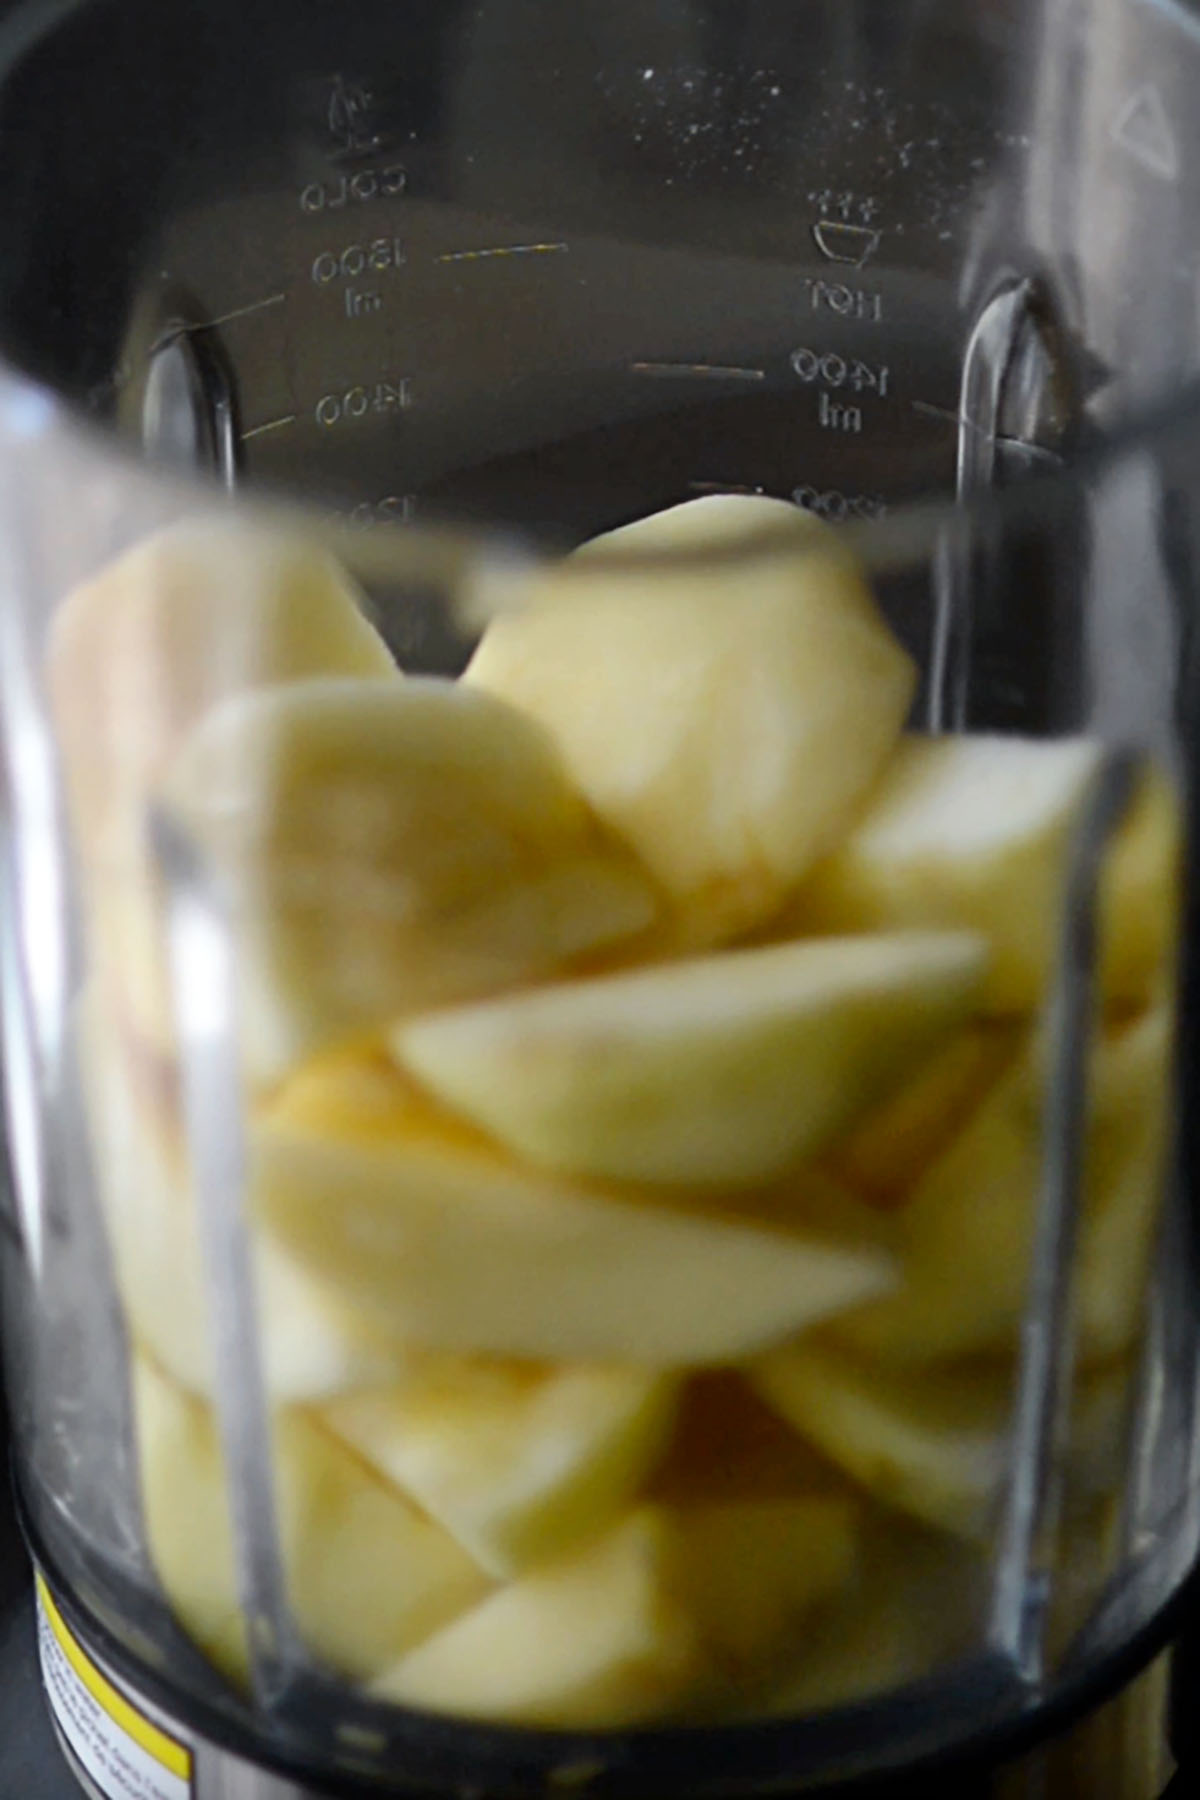 Sliced apples in a blender.